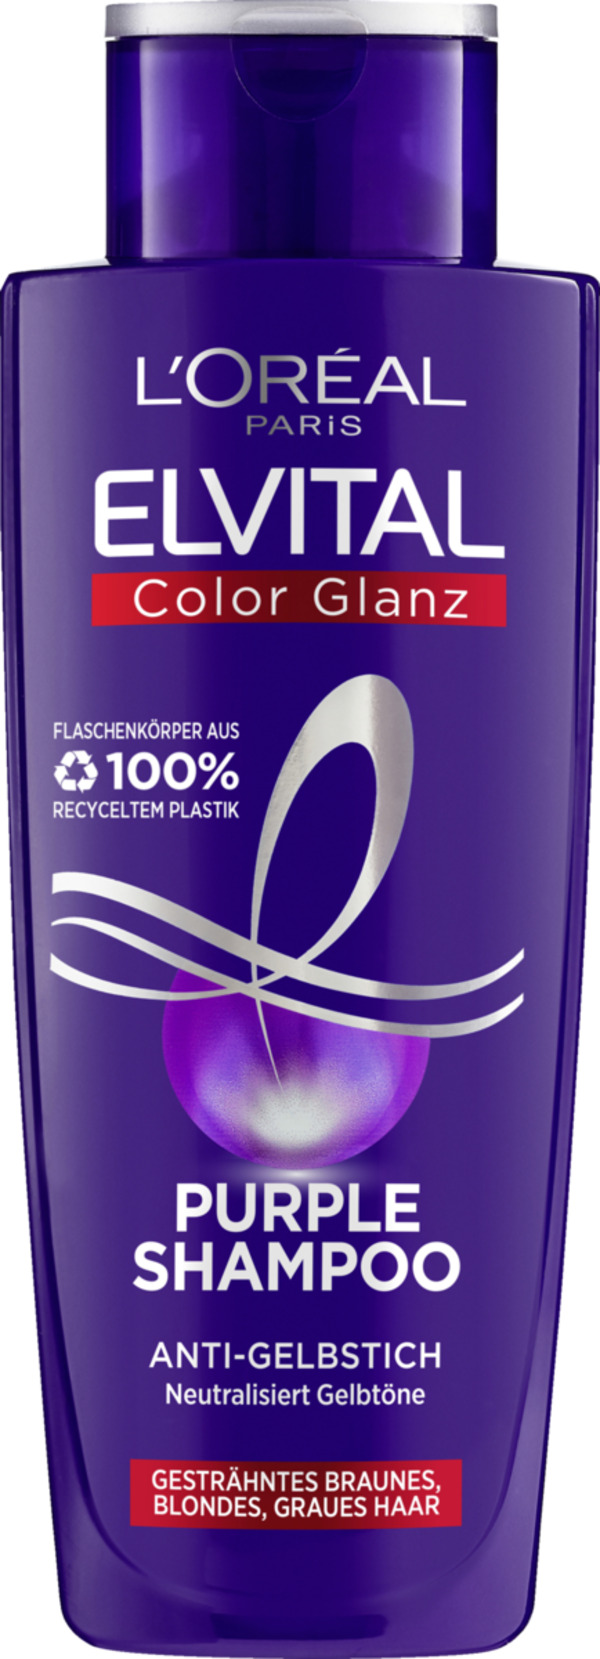 Bild 1 von L’Oréal Paris Color Glanz Purple Shampoo 1.50 EUR/100 ml